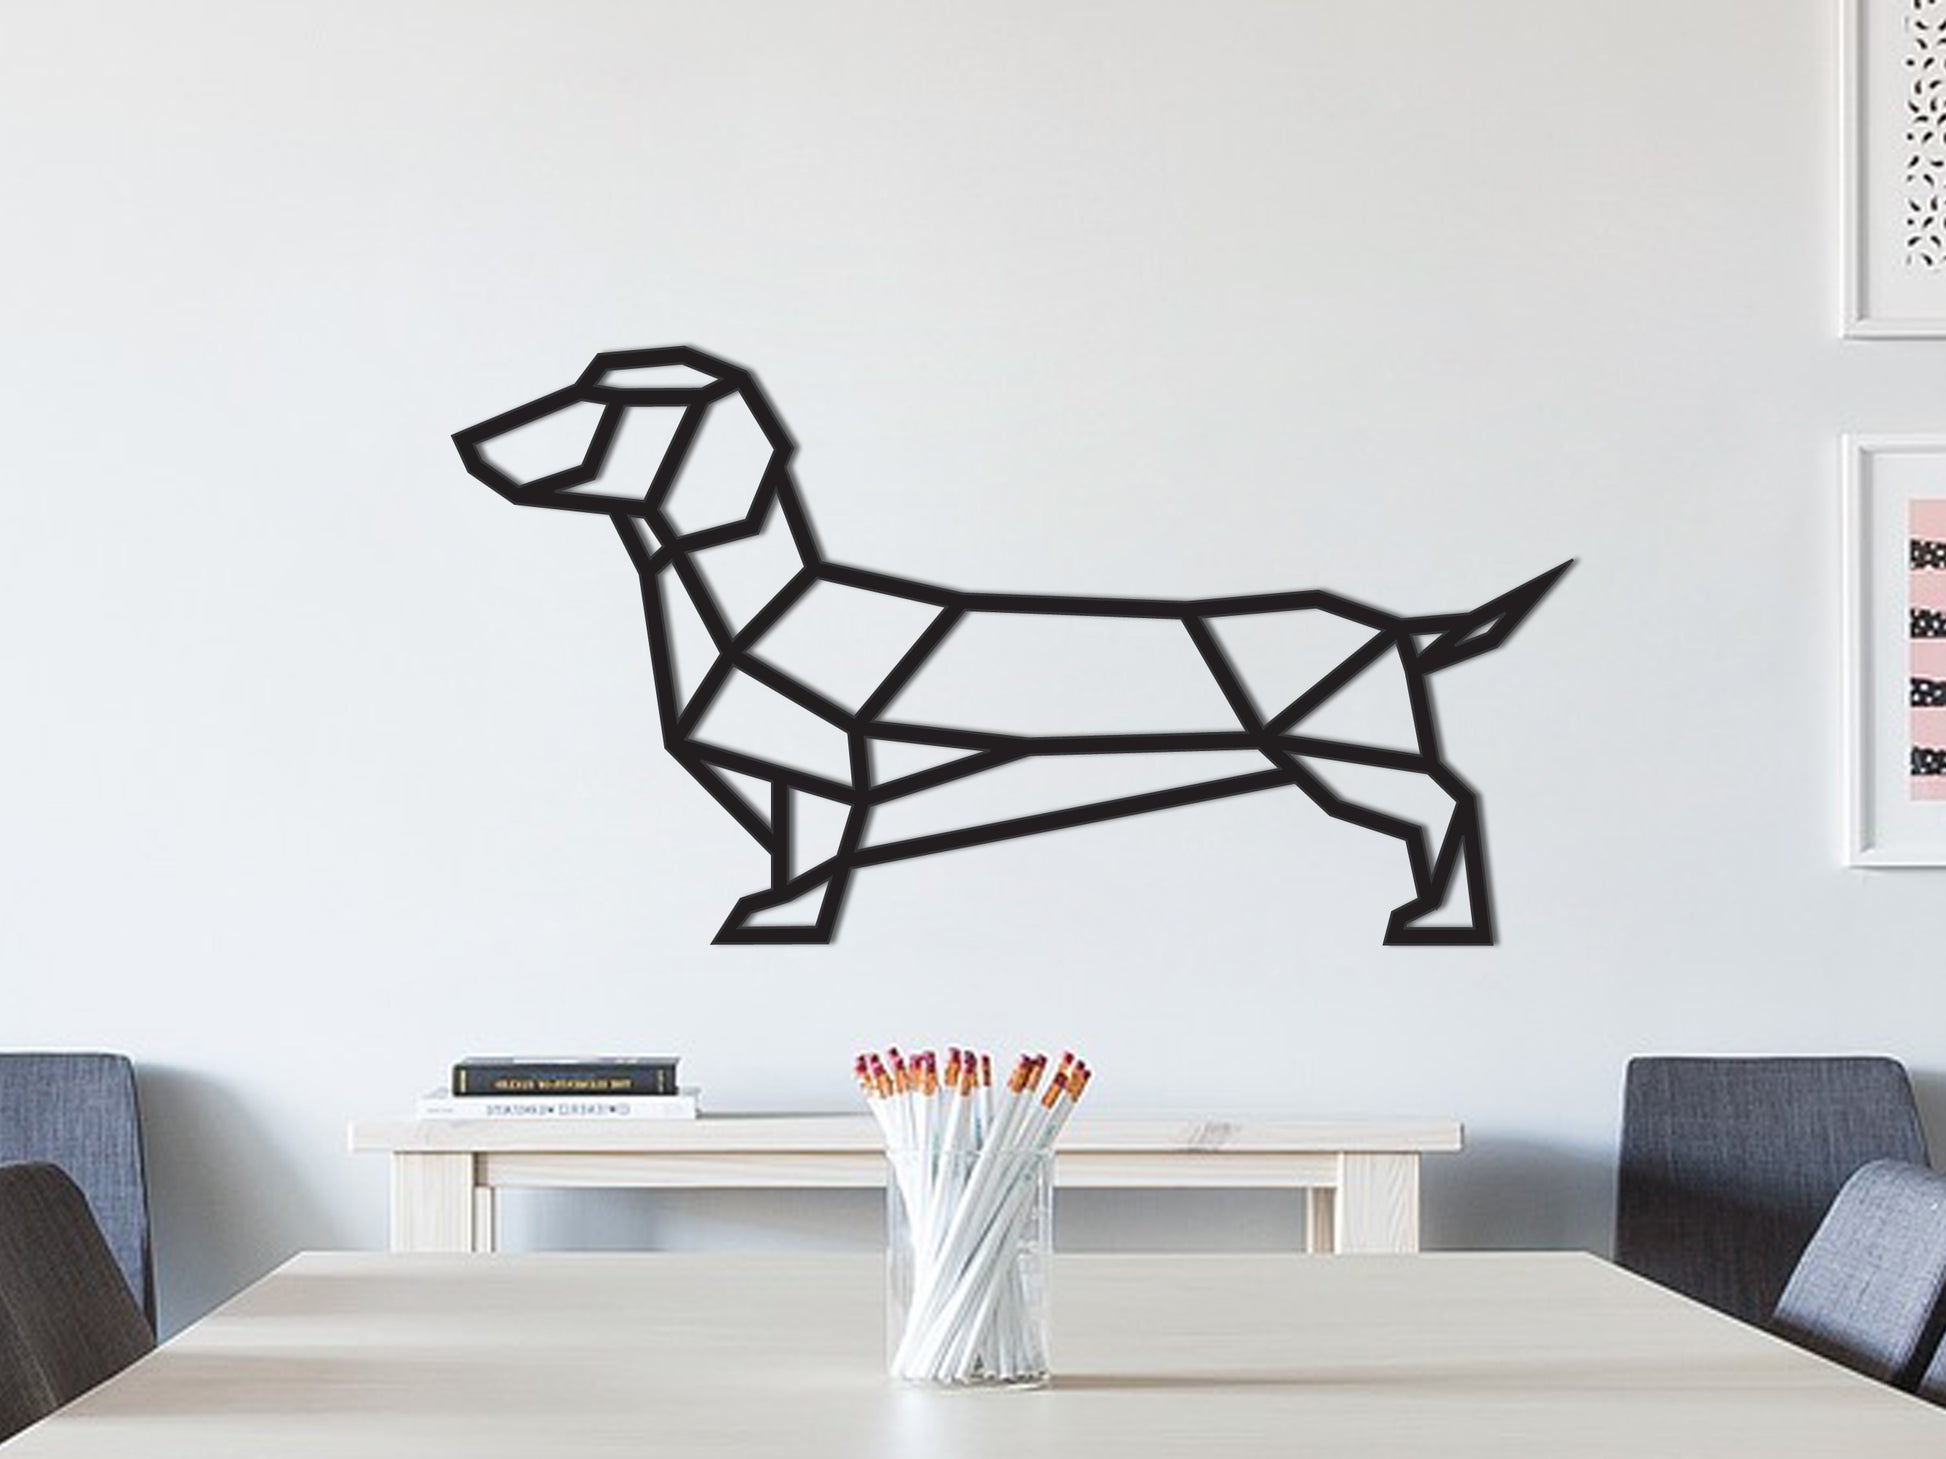 decoration Sausage IDEA - Wienerdog Dachshund - Geometric - wall Wooden – dog SOLID